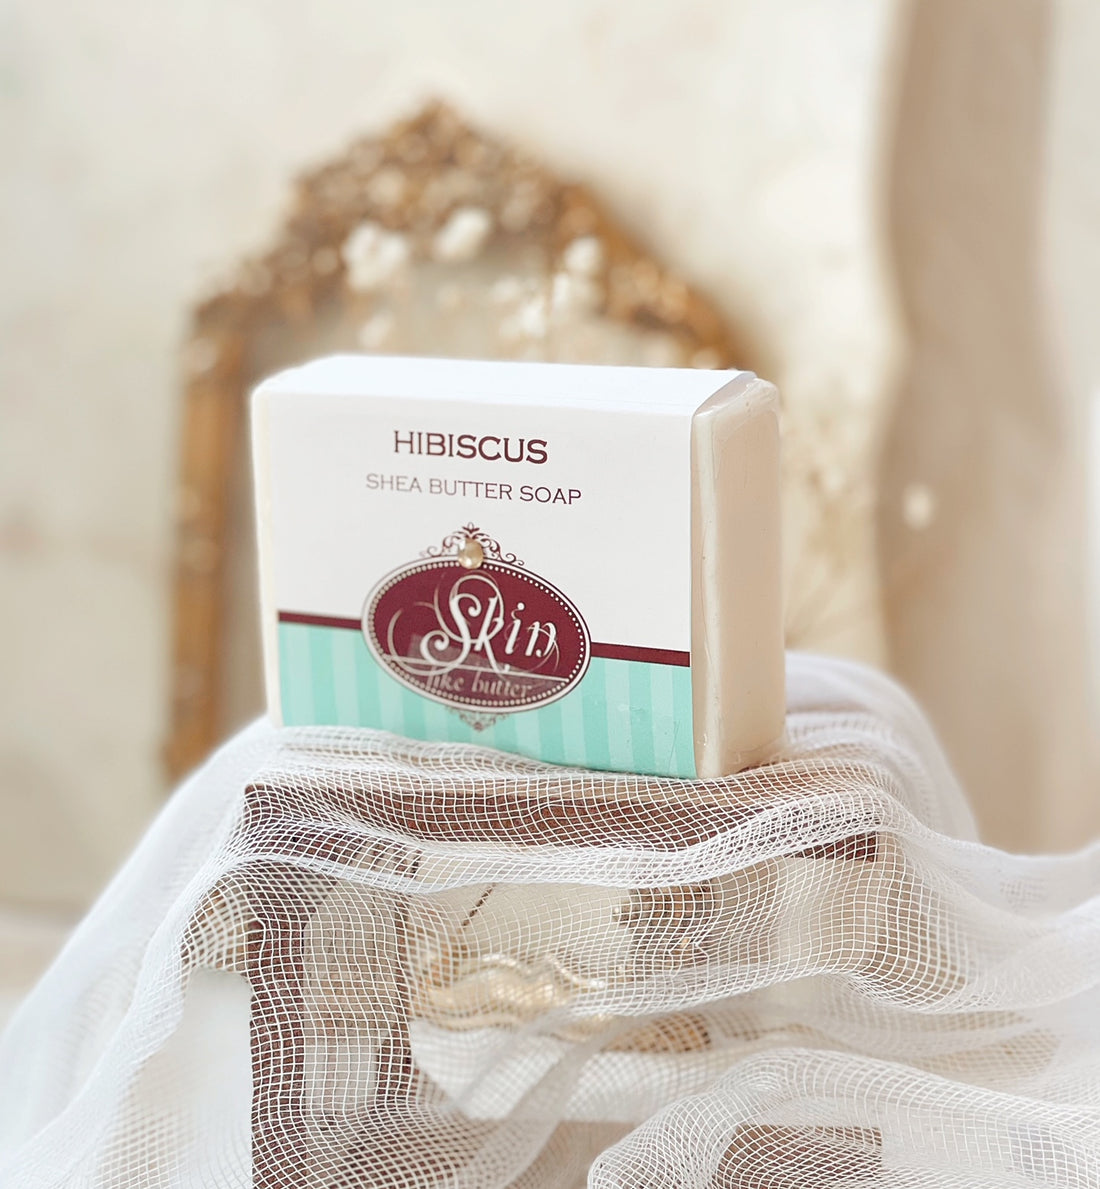 HIBISCUS - Skin Like Butter - Shea Butter 4 oz Soap Bar